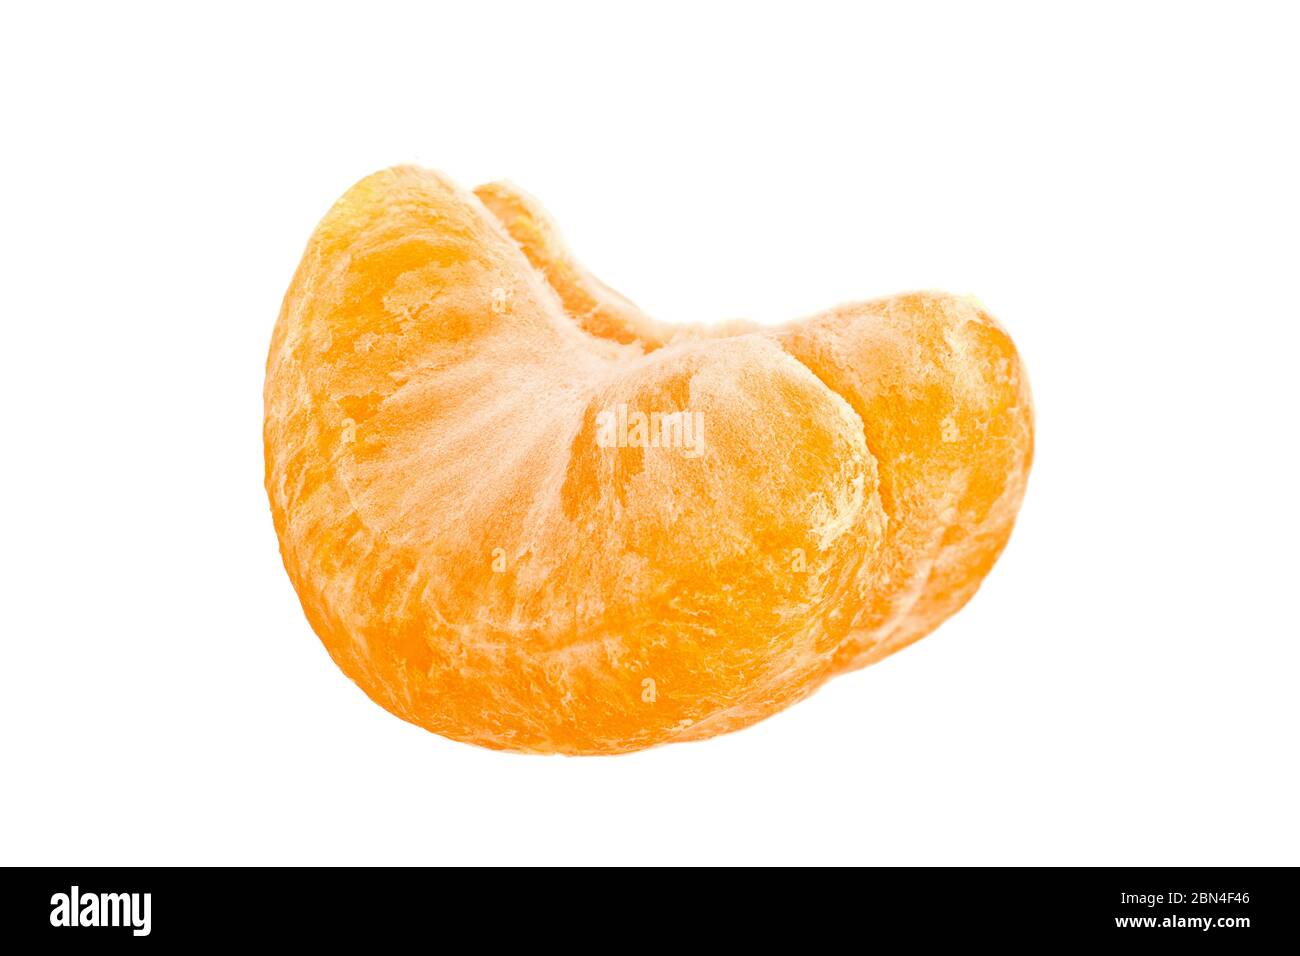 Ripe tangerine fruit closeup isolated on white background Stock Photo